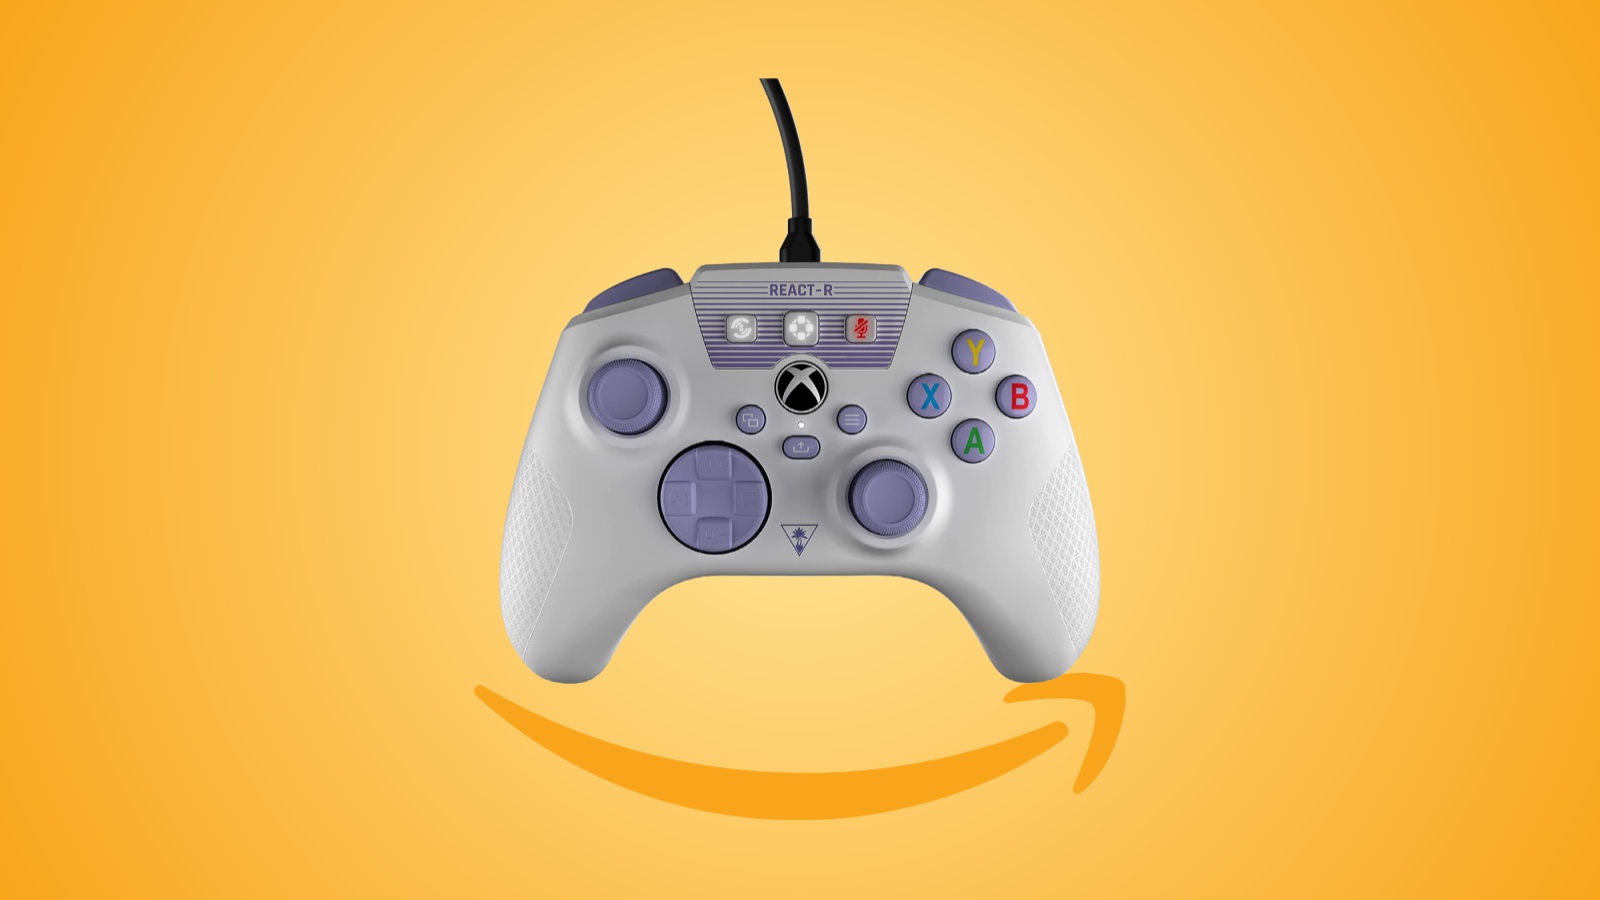 Offerte Amazon: controller Turtle Beach REACT-R in forte sconto, per PC e Xbox